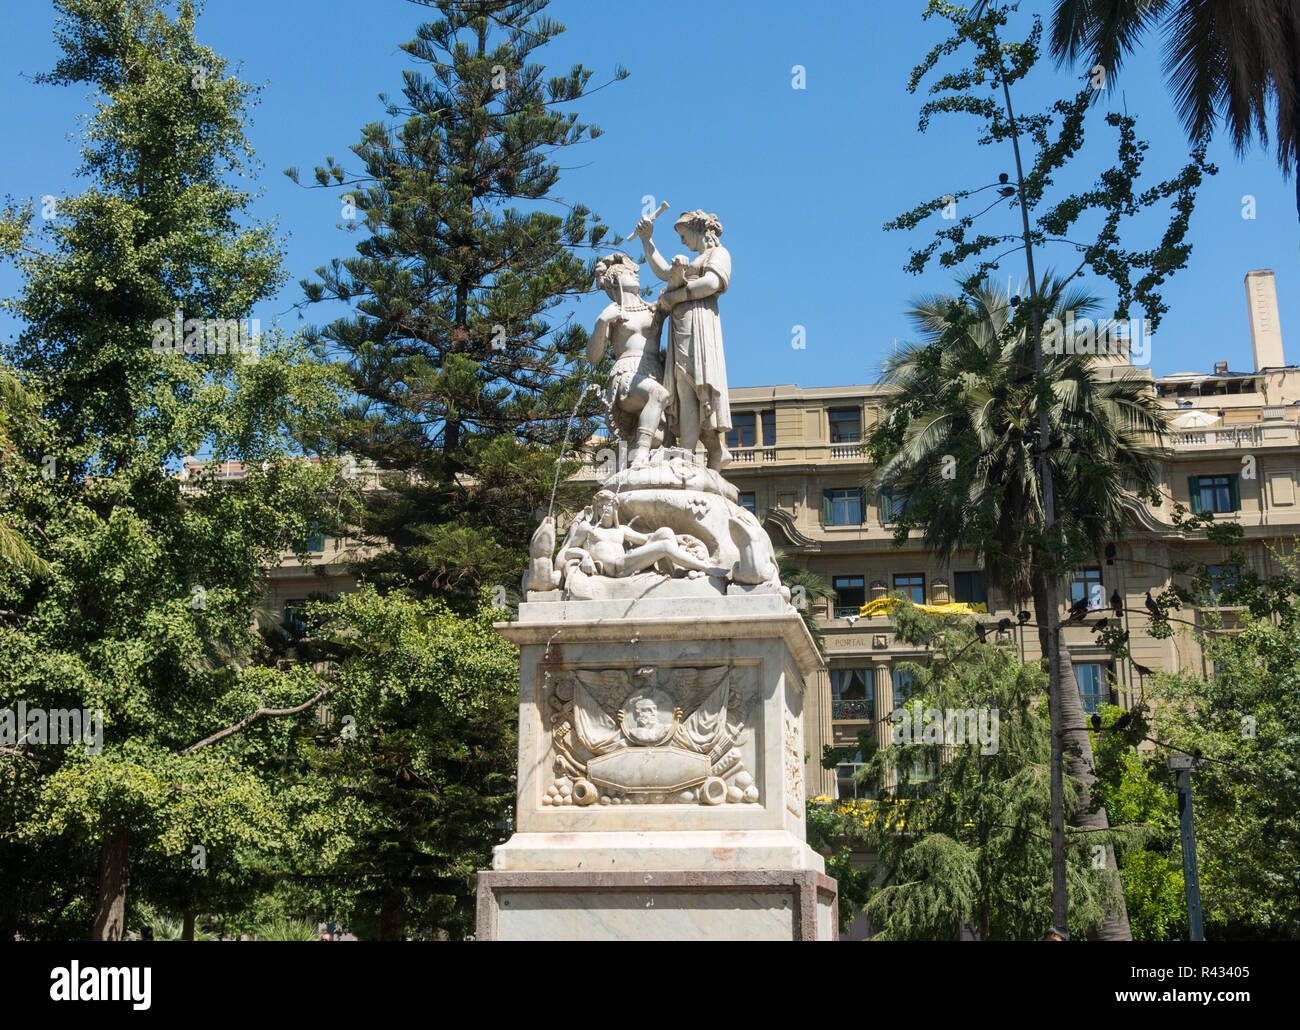 SANTIAGO DE Cile, Cile - 26 gennaio 2018: Monumento alla Libertà Americana, scultura in marmo si trova nel centro di Plaza de Armas in Santiag Foto Stock